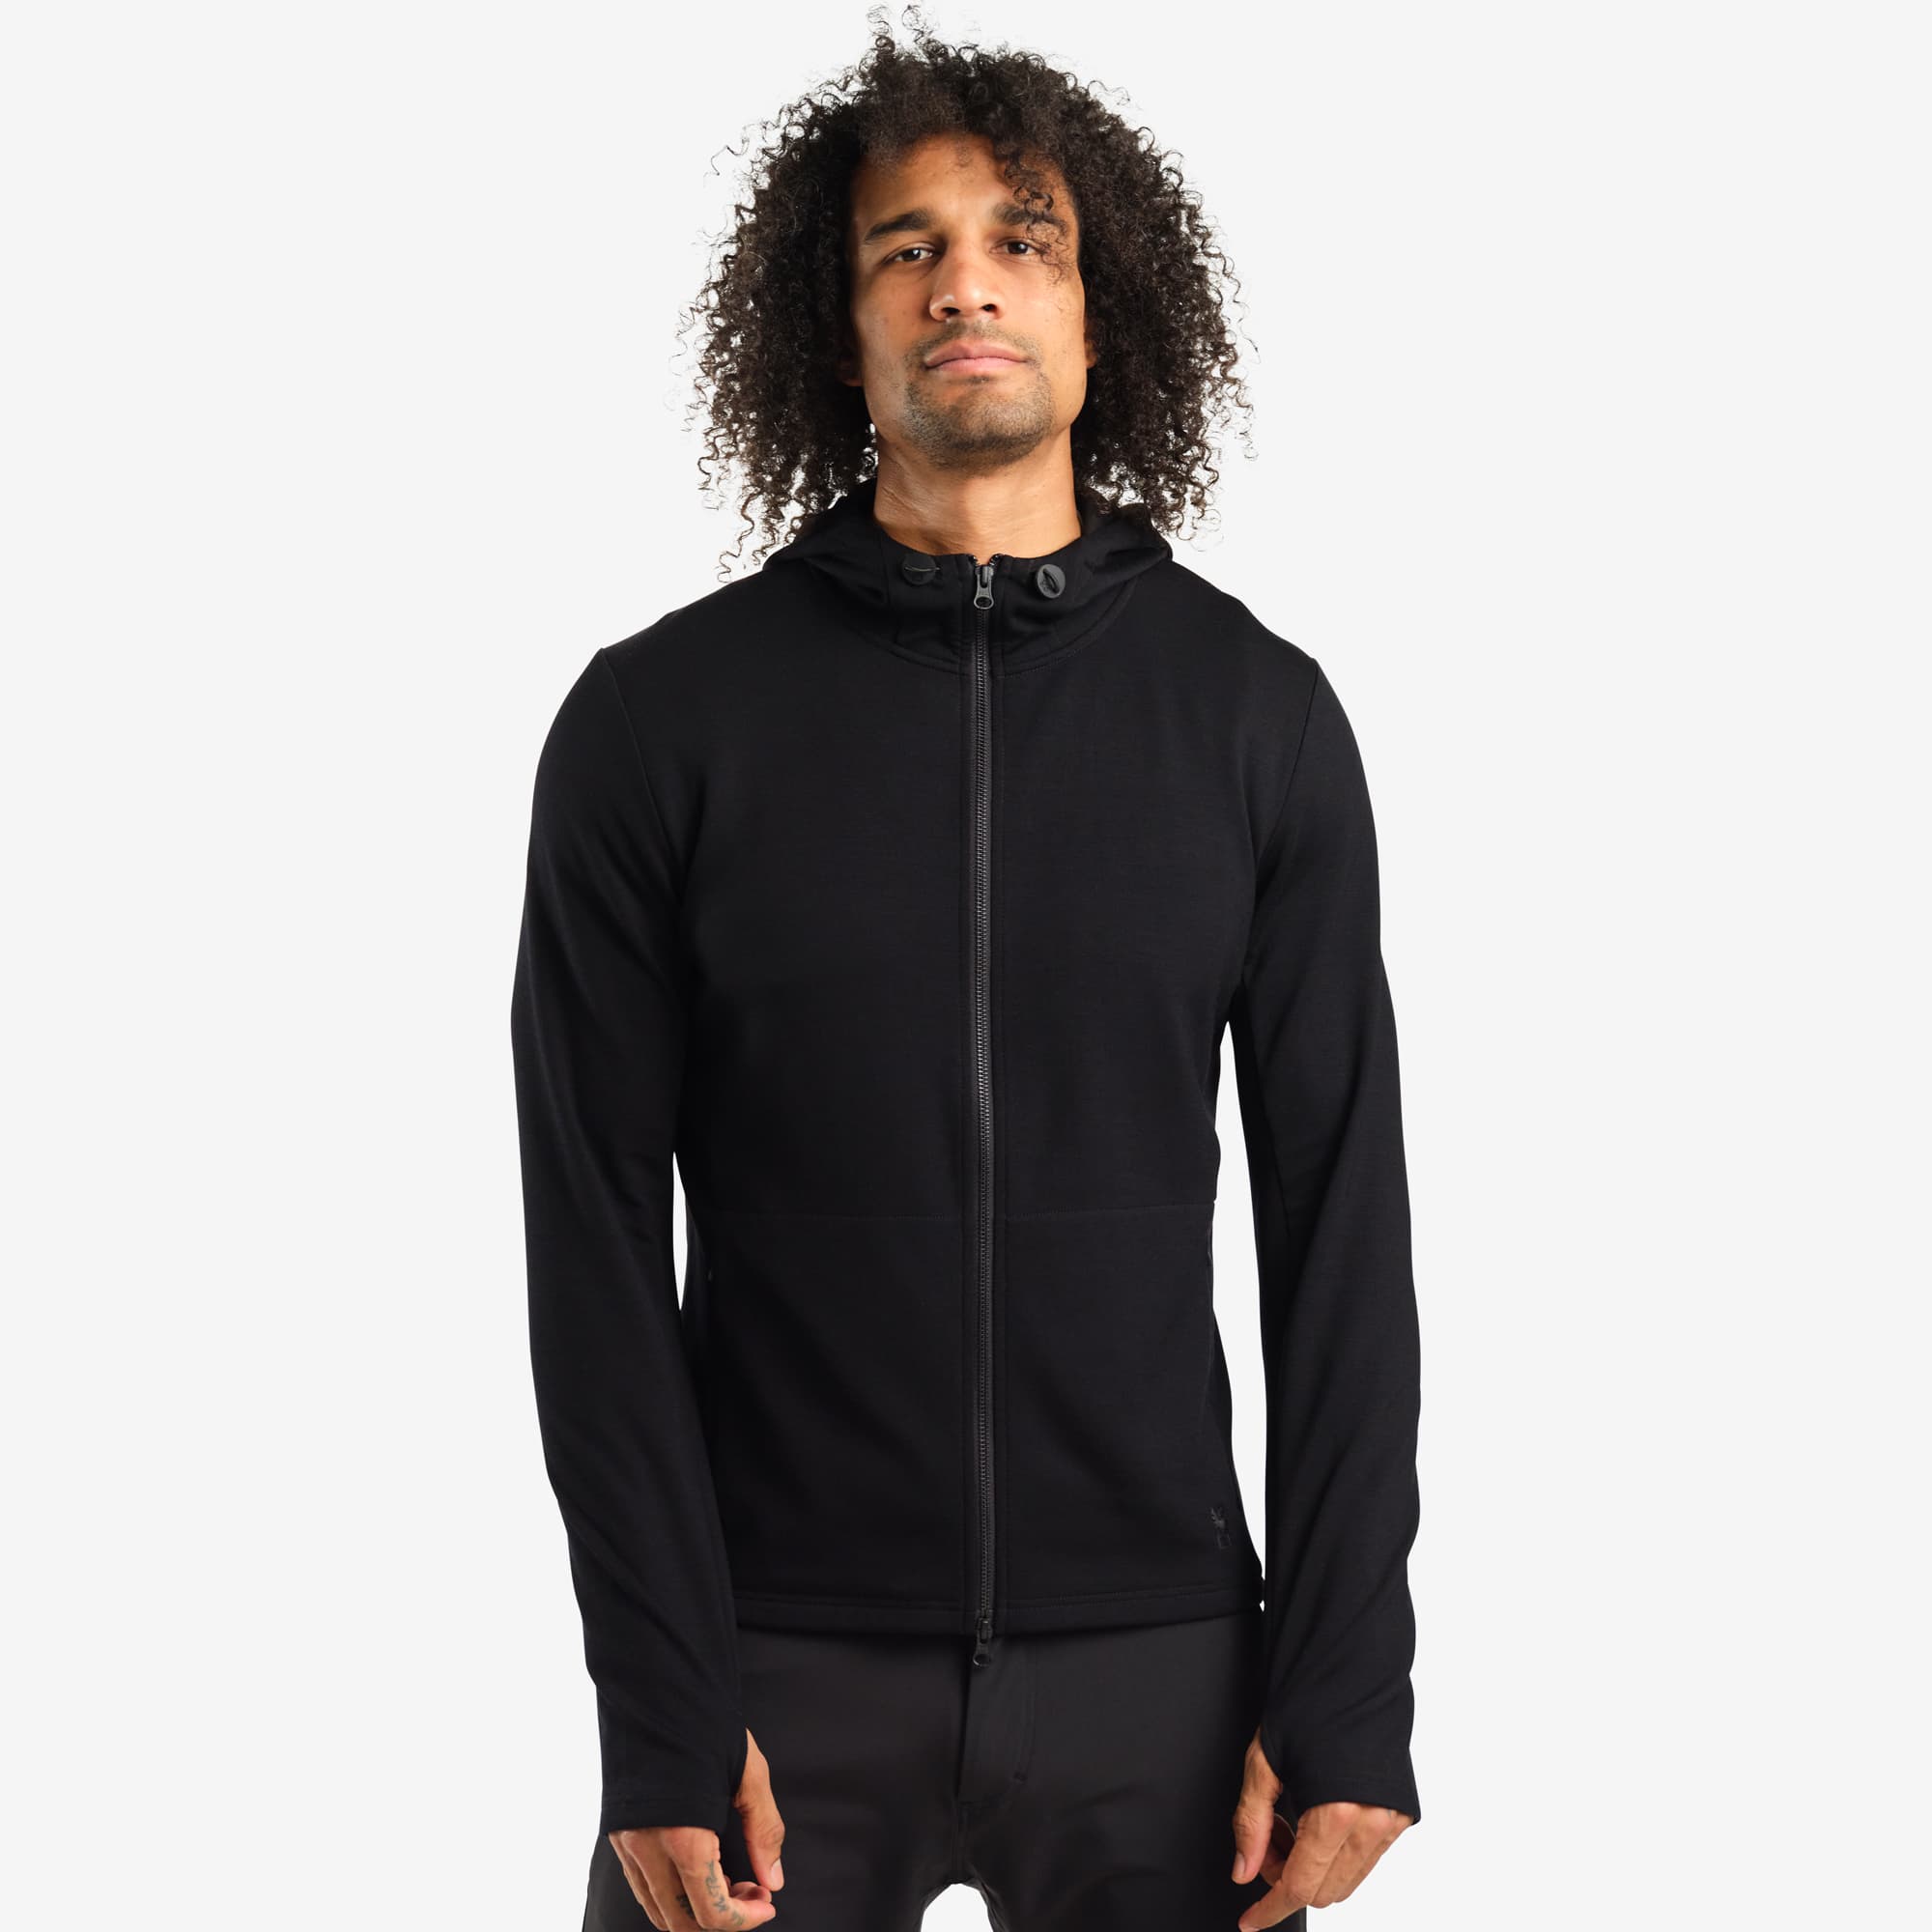 Men's merino blend hoodie in black worn by a man #color_black